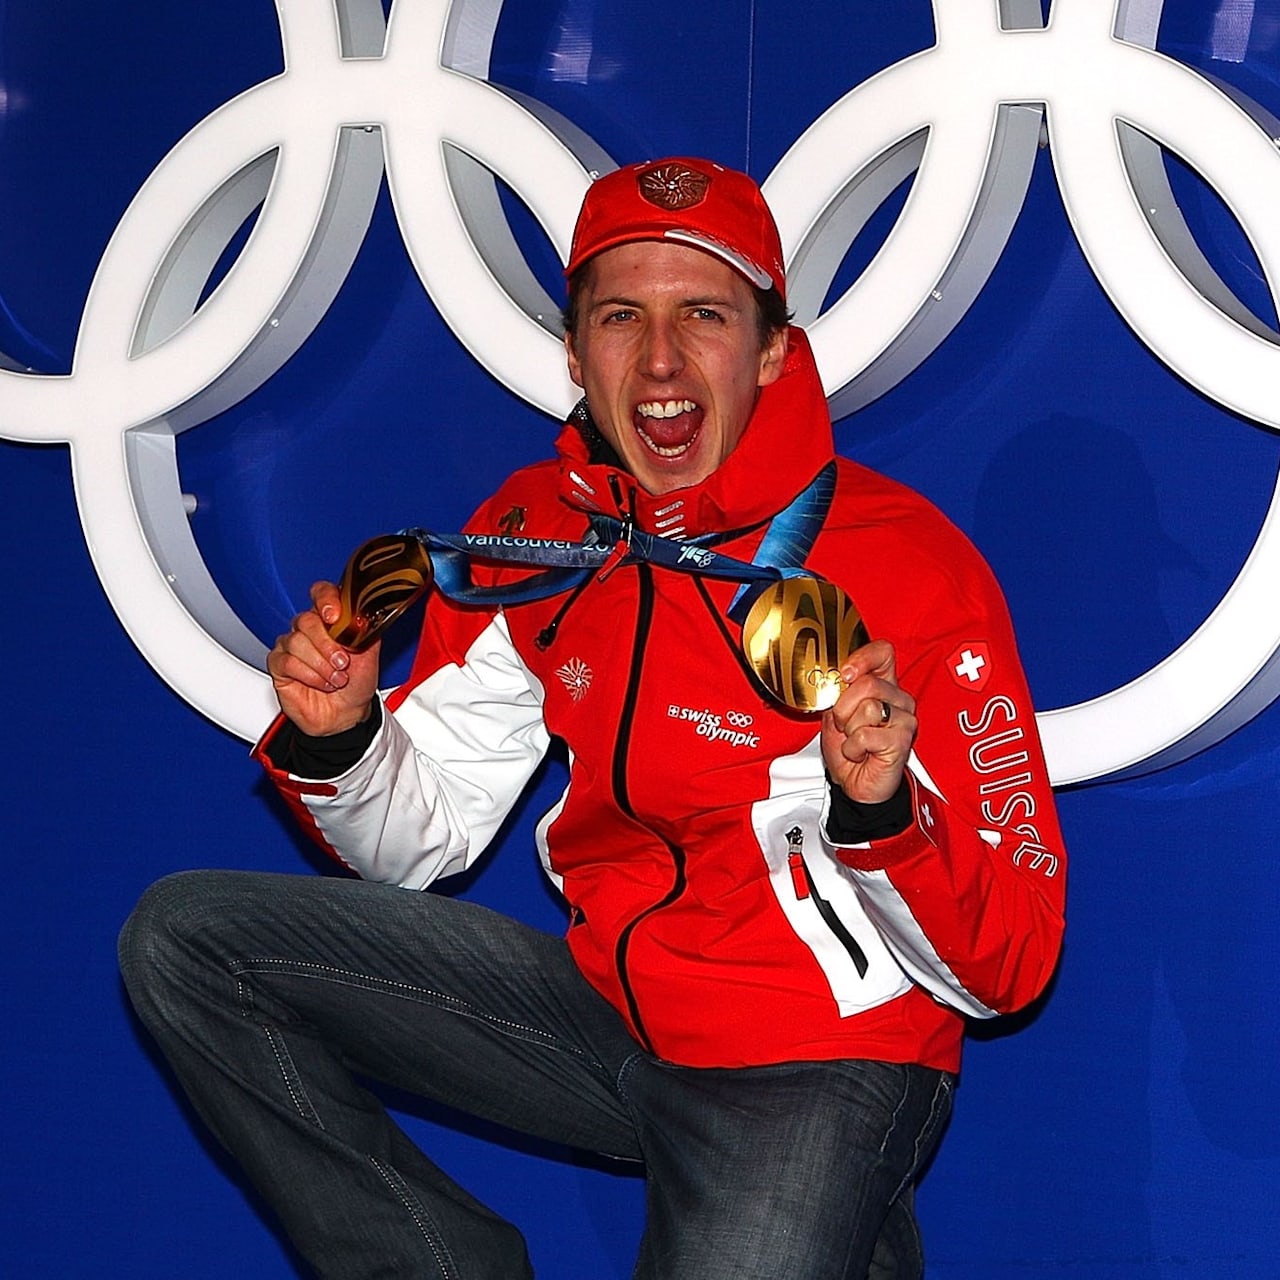 スキージャンプレジェンドのアマン 北京で新たな金メダル獲得に挑戦へ